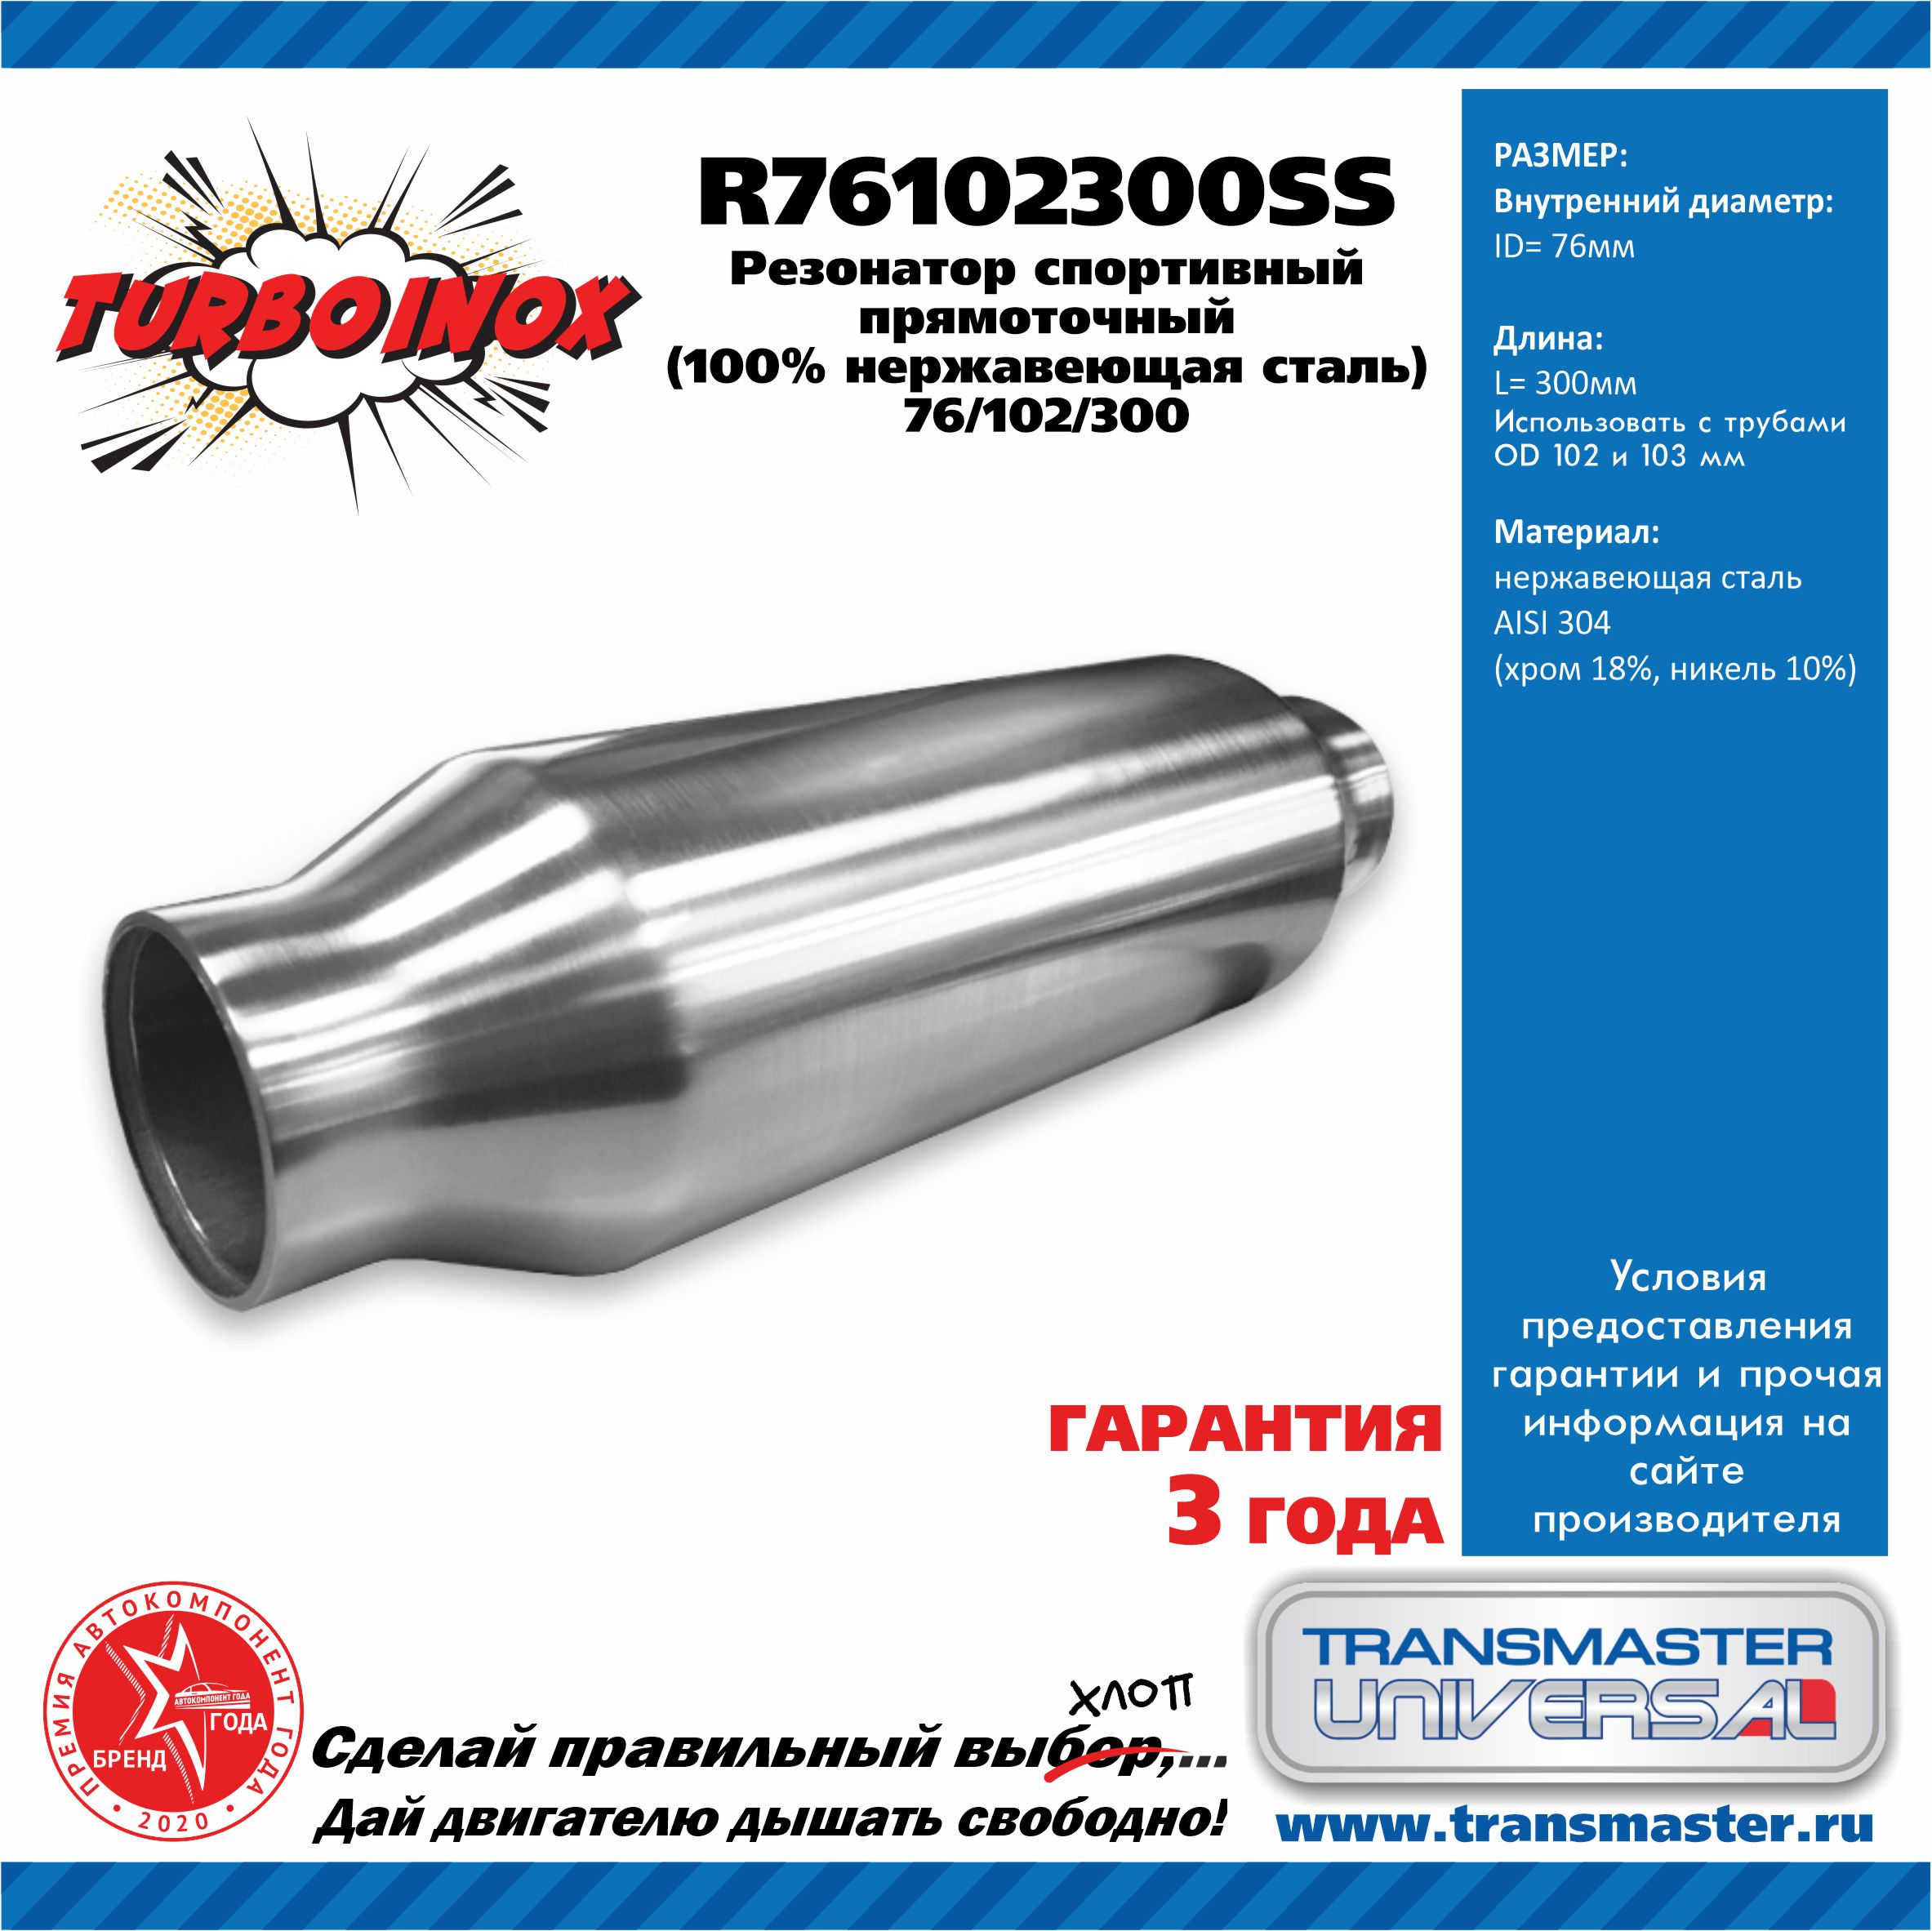 Резонатор спортивный прямоточный серия turboinox (100% нержавеющая сталь) - TRANSMASTER UNIVERSAL R76102300SS